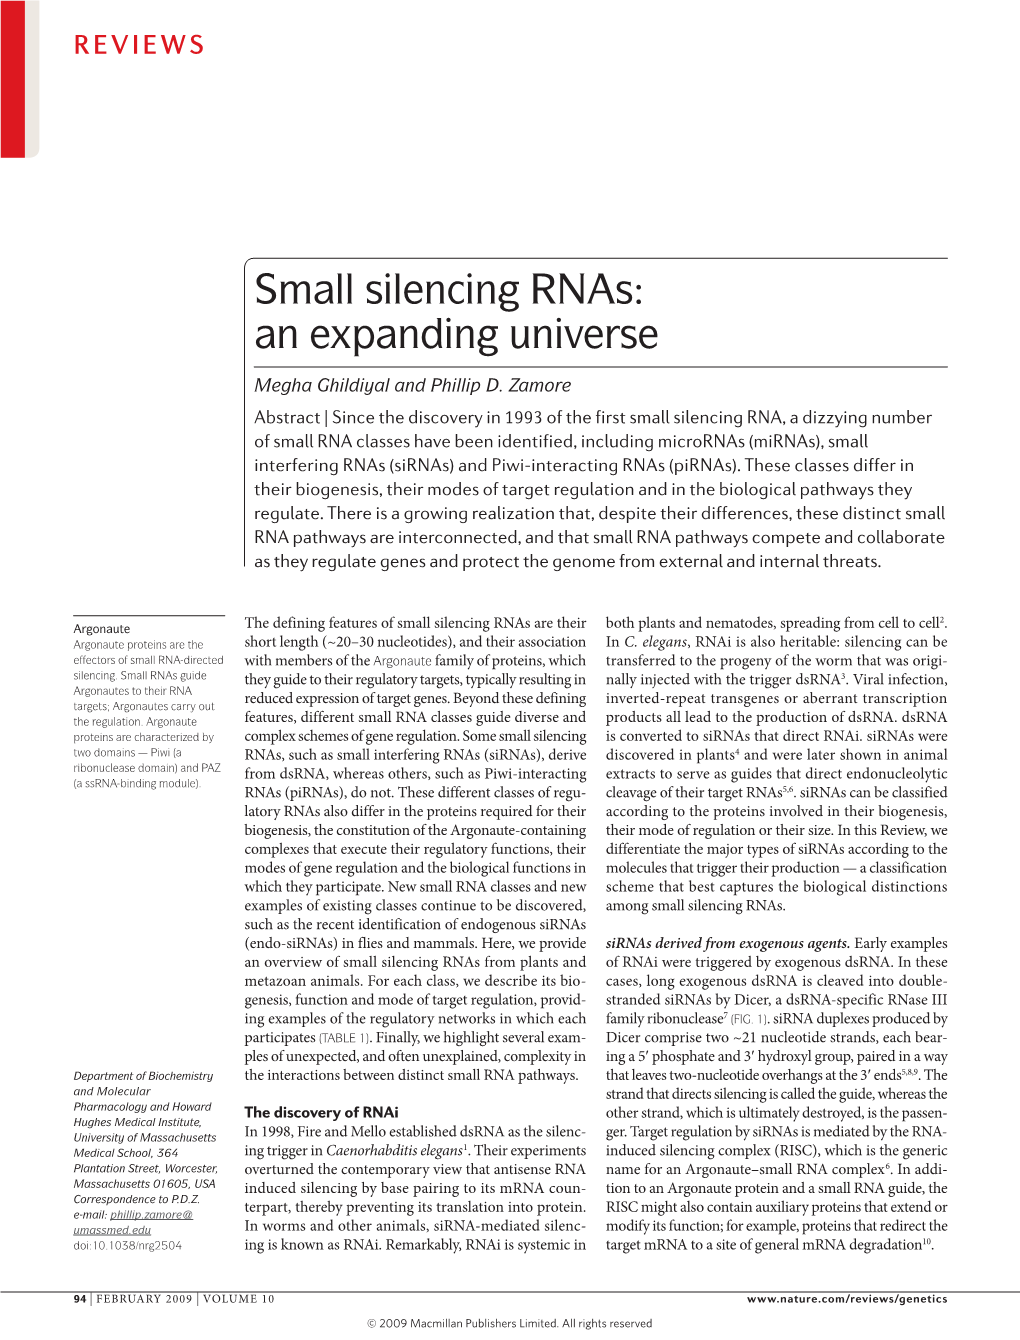 Small Silencing Rnas: an Expanding Universe